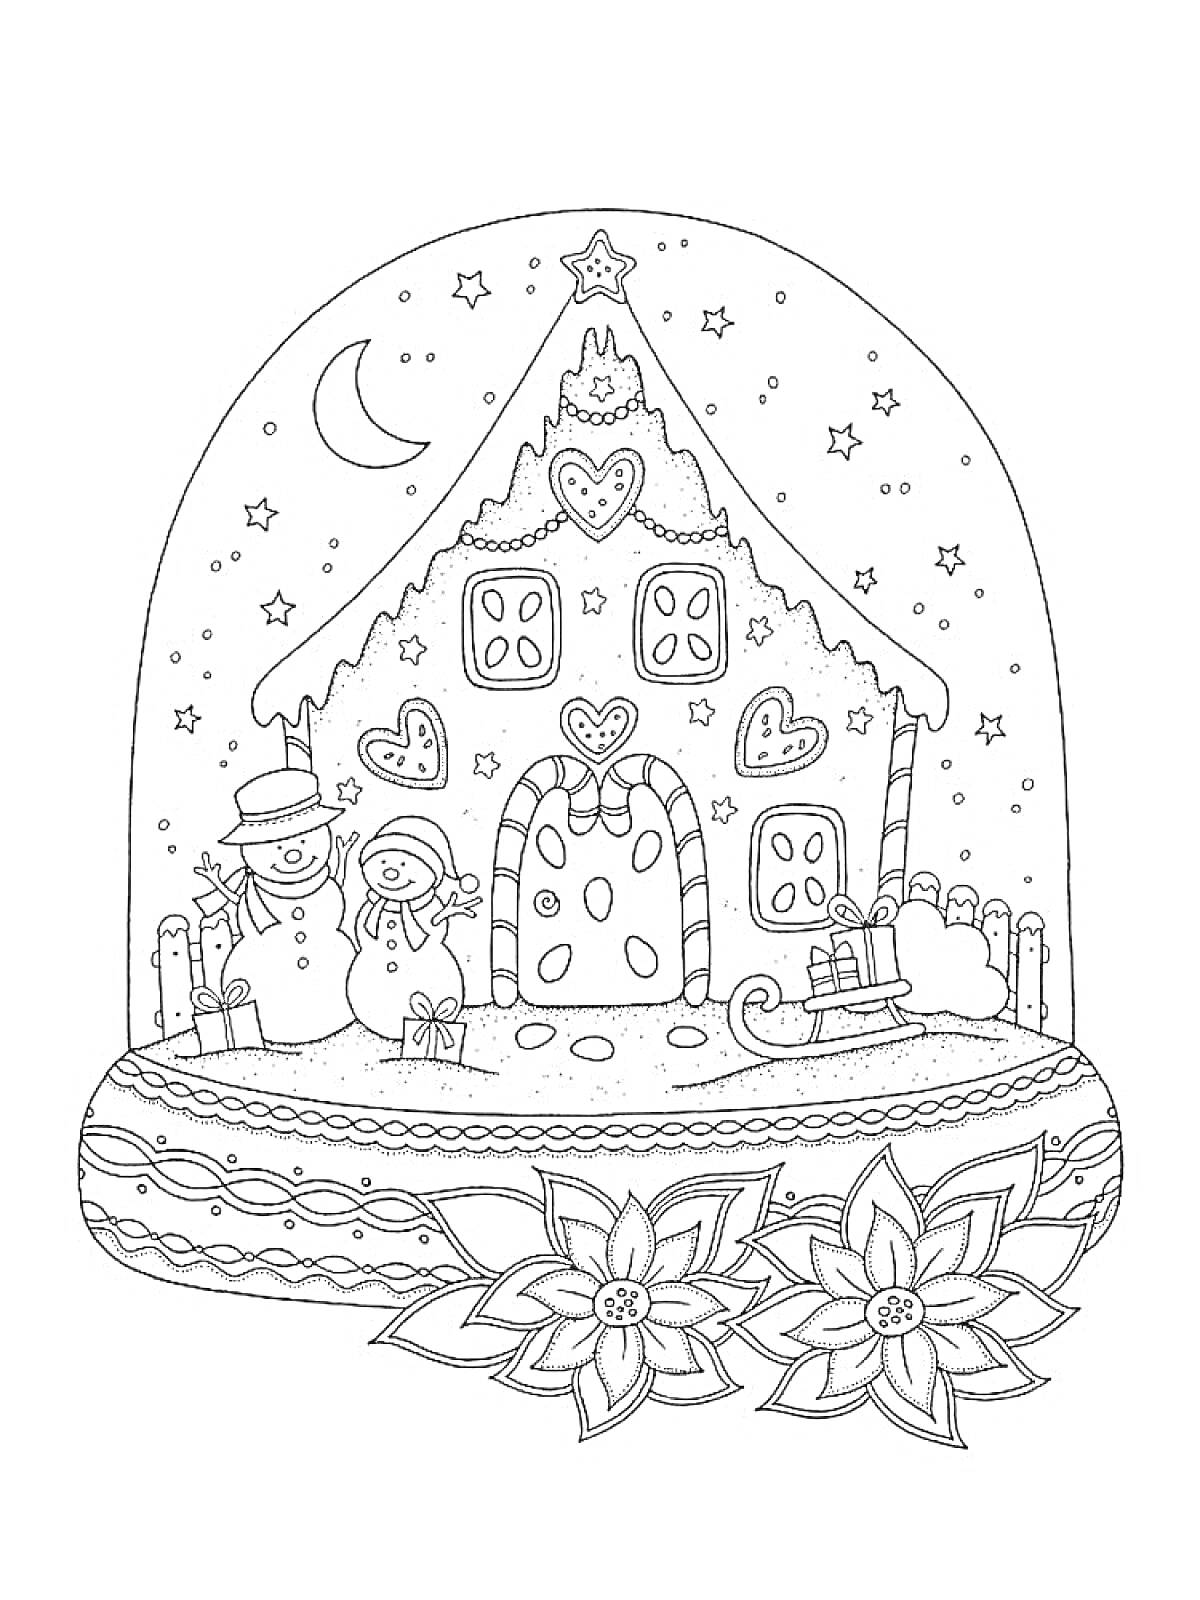 Пряничный домик в снежном шаре с снеговиками, санками, звездами, цветами и месяцем